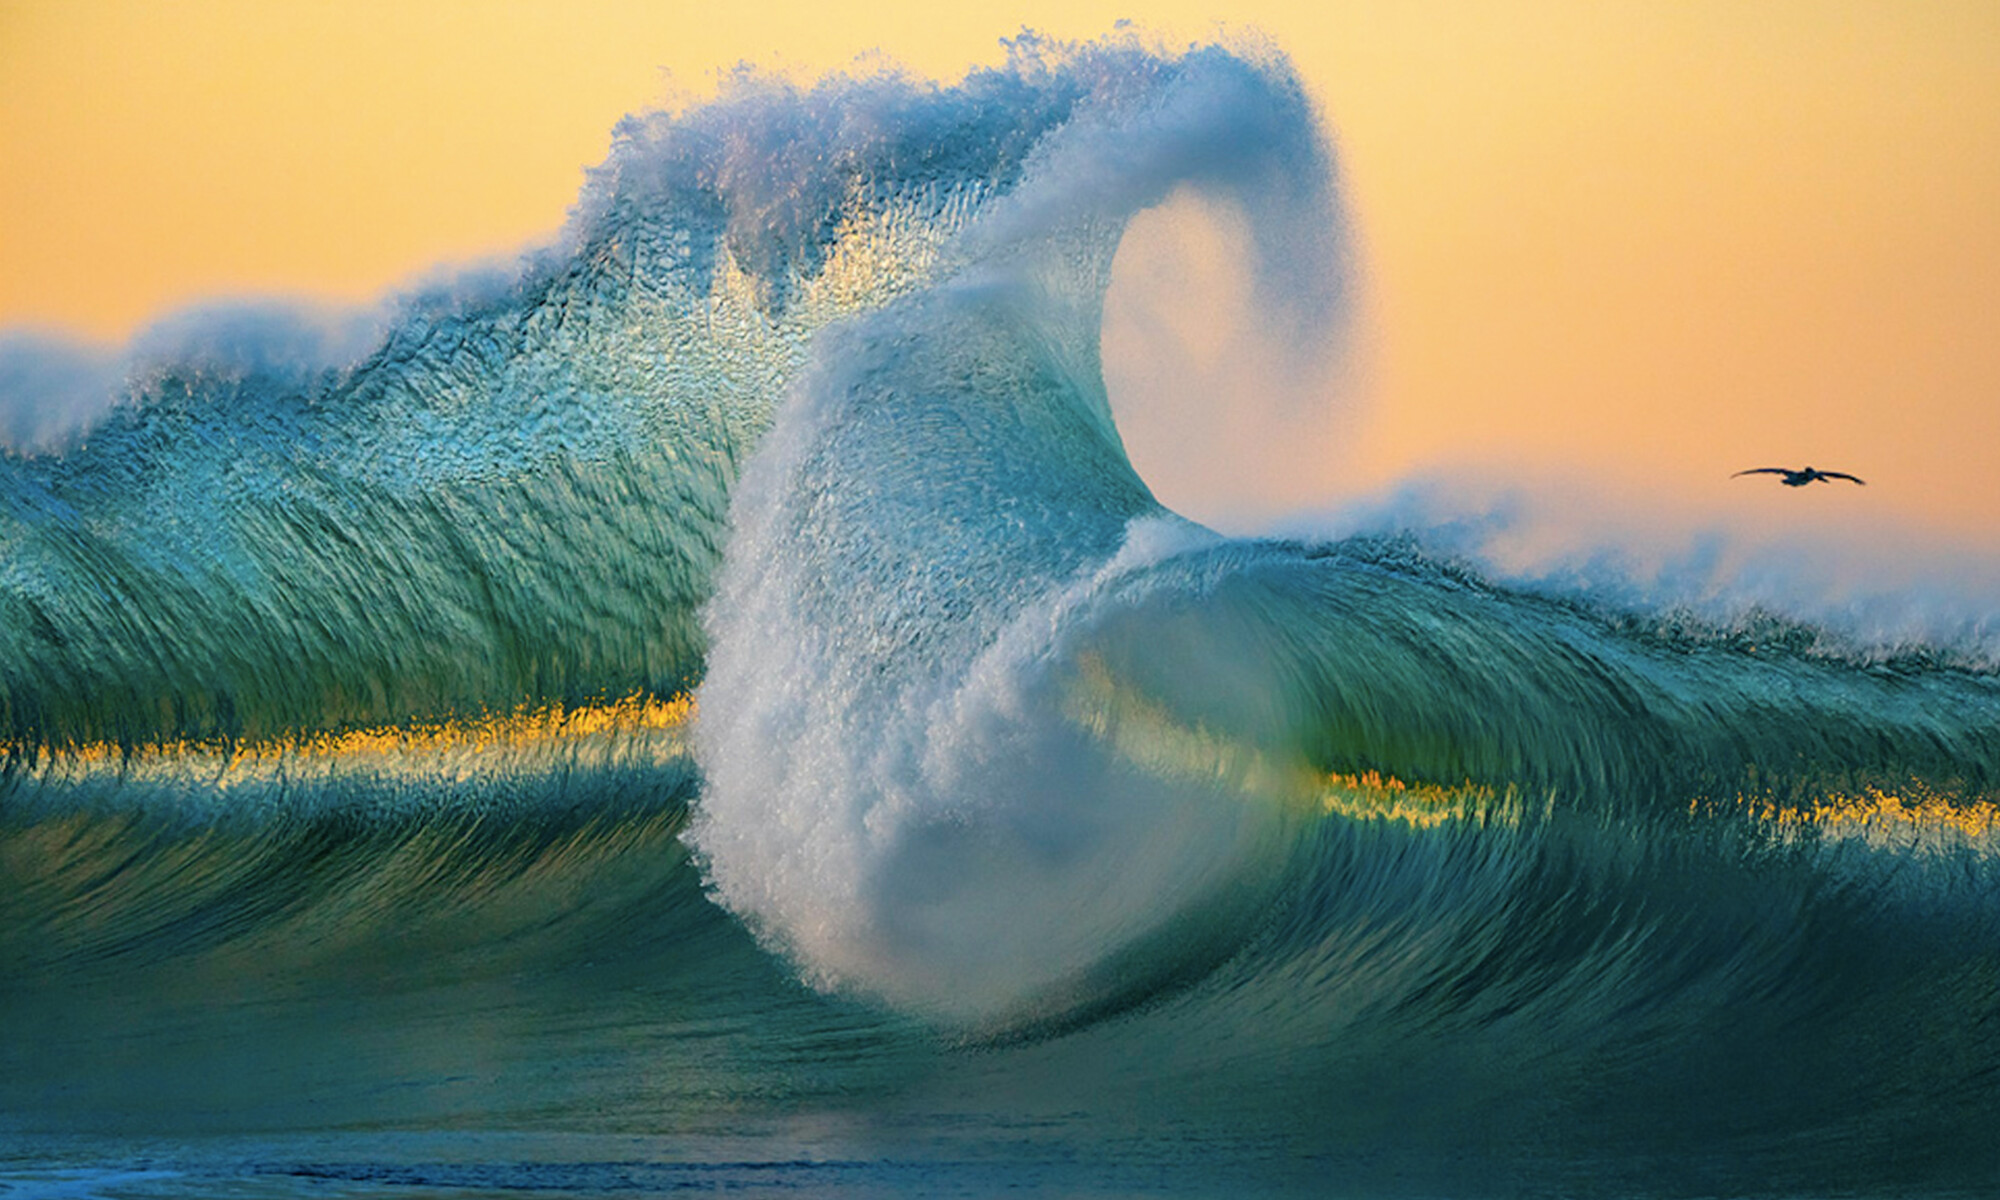 Les magnifiques images de grandes vagues du photographe d'art illustrent la puissance de l'océan